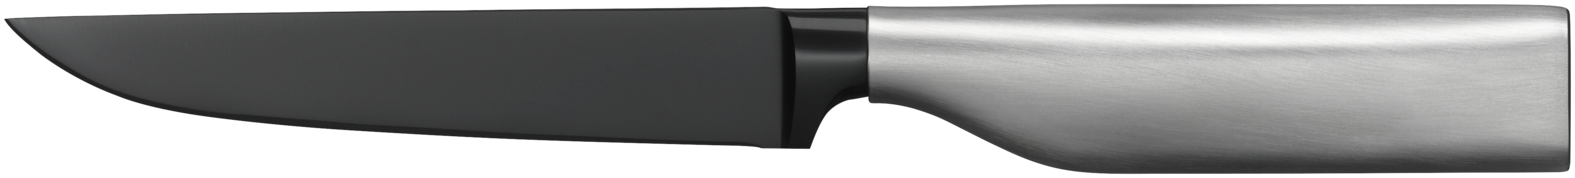 Универсальный нож Ultimate Black 12 см универсальный фильтр пакет для заваривания бацькина баня